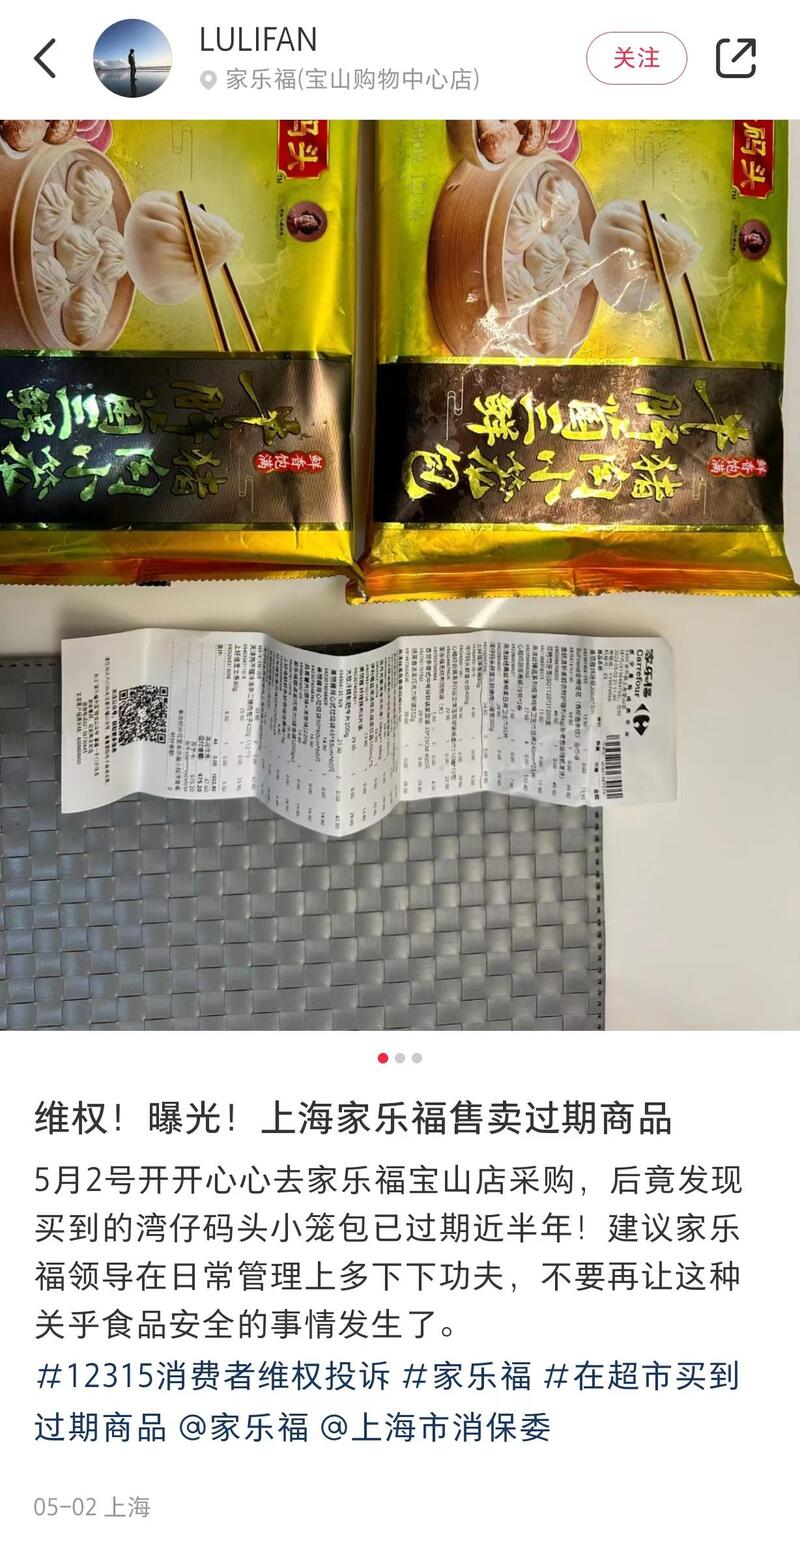 网友“LULIFAN”称，在家乐福宝山店买到了过期近半年的小笼包。